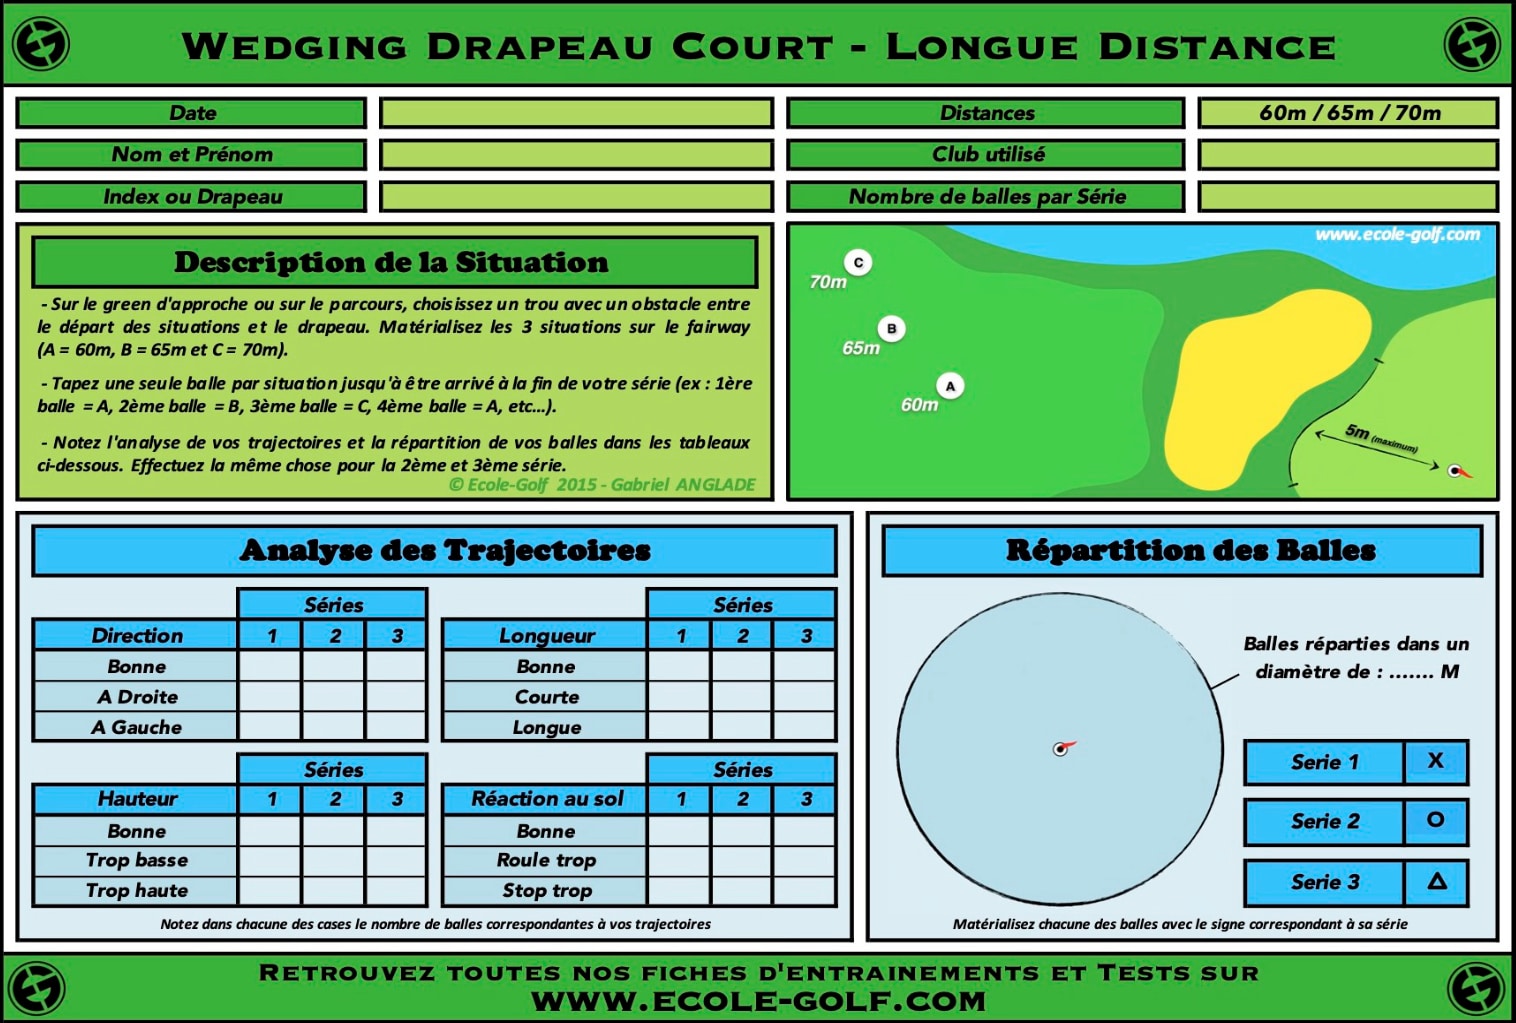 Wedging Drapeau Court - Longue Distance